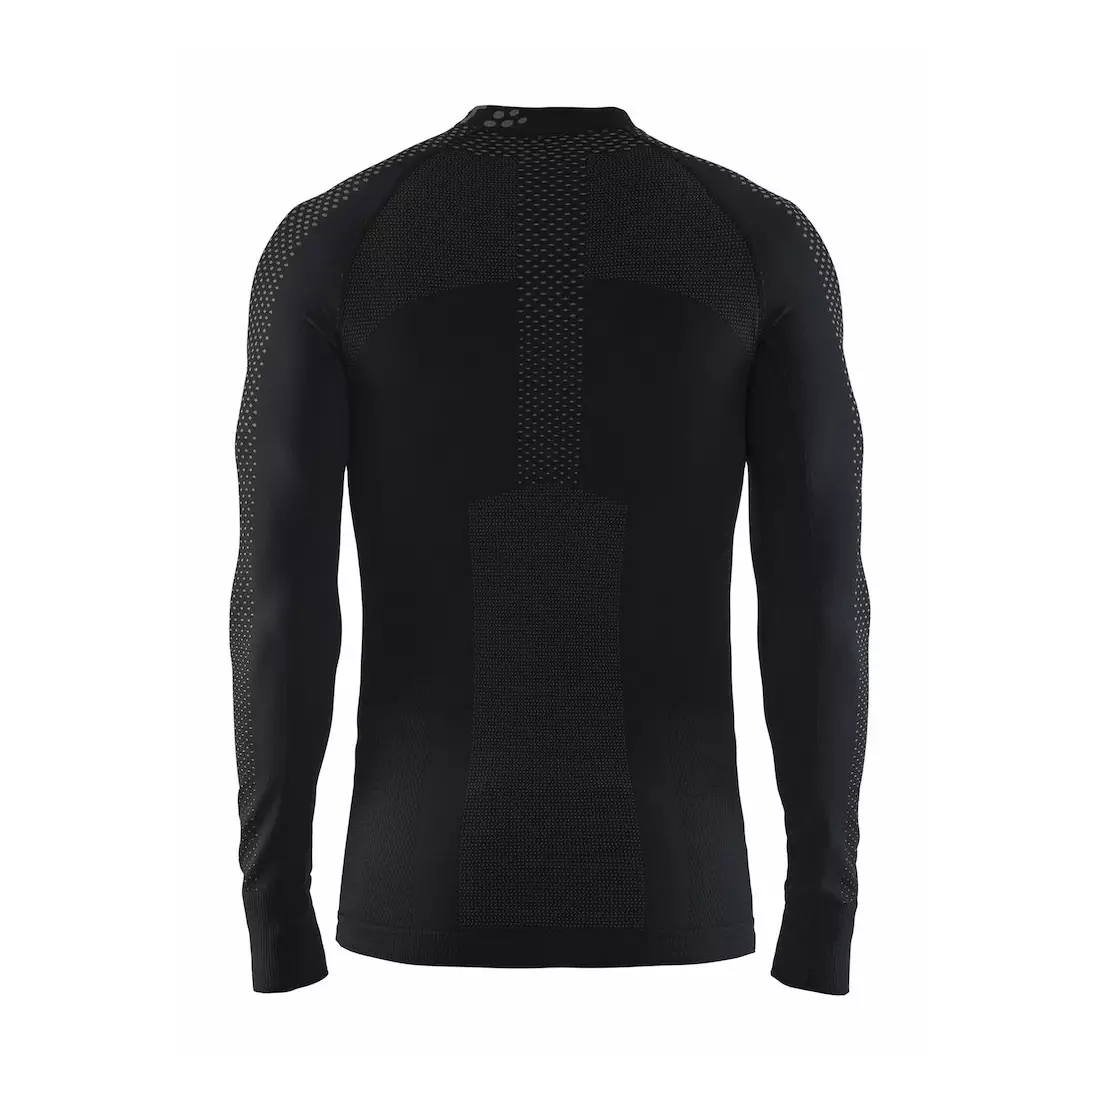 CRAFT WARM INTENSITY Unterwäsche Herren T-Shirt, schwarz 1905350-999985